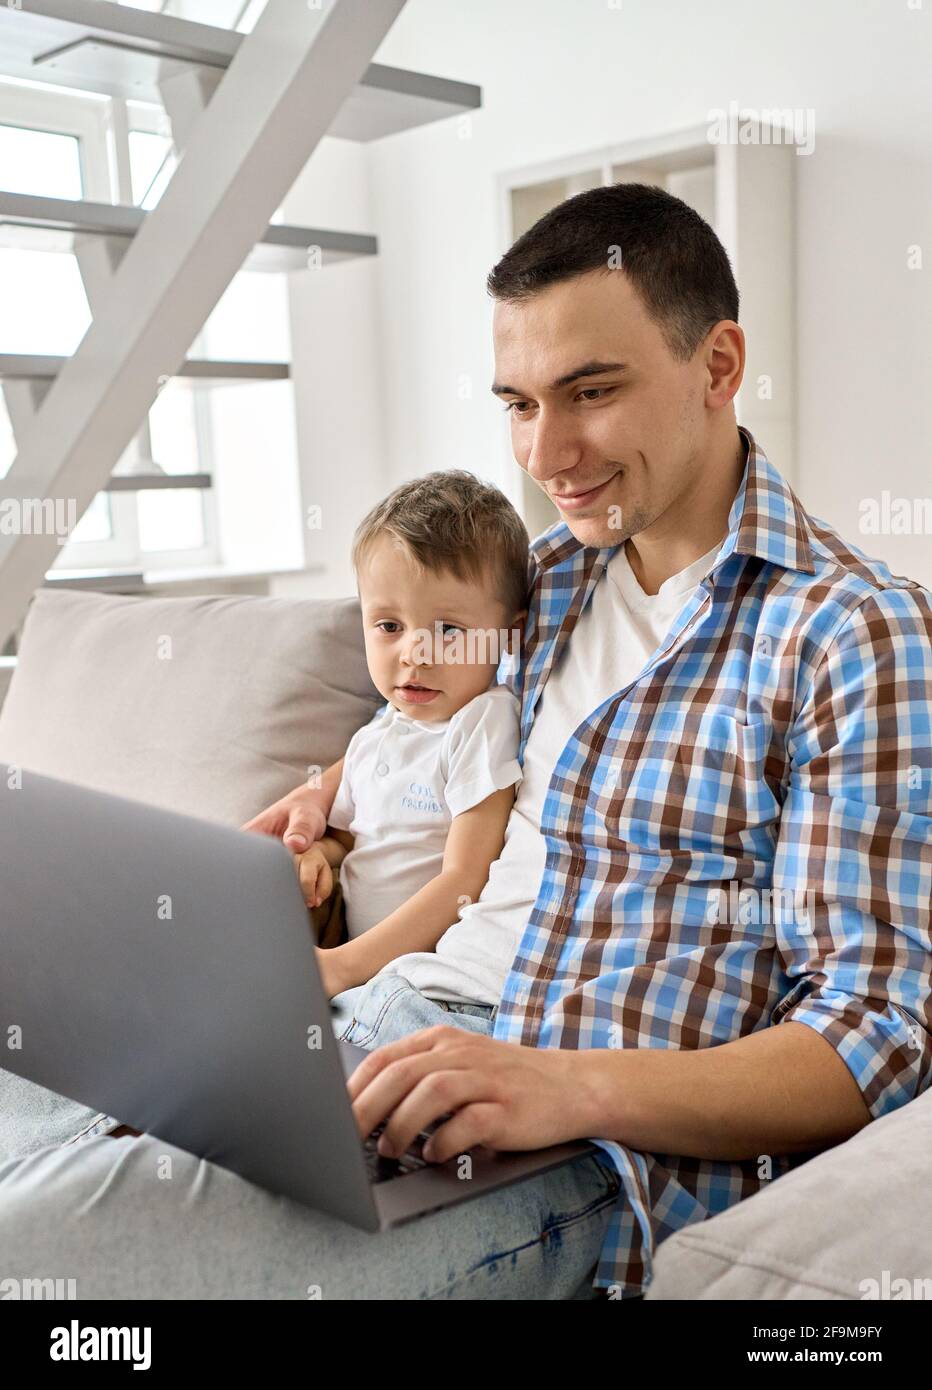 Un jeune père heureux qui se moque d'un petit fils regarde un ordinateur portable assis sur un canapé. Banque D'Images